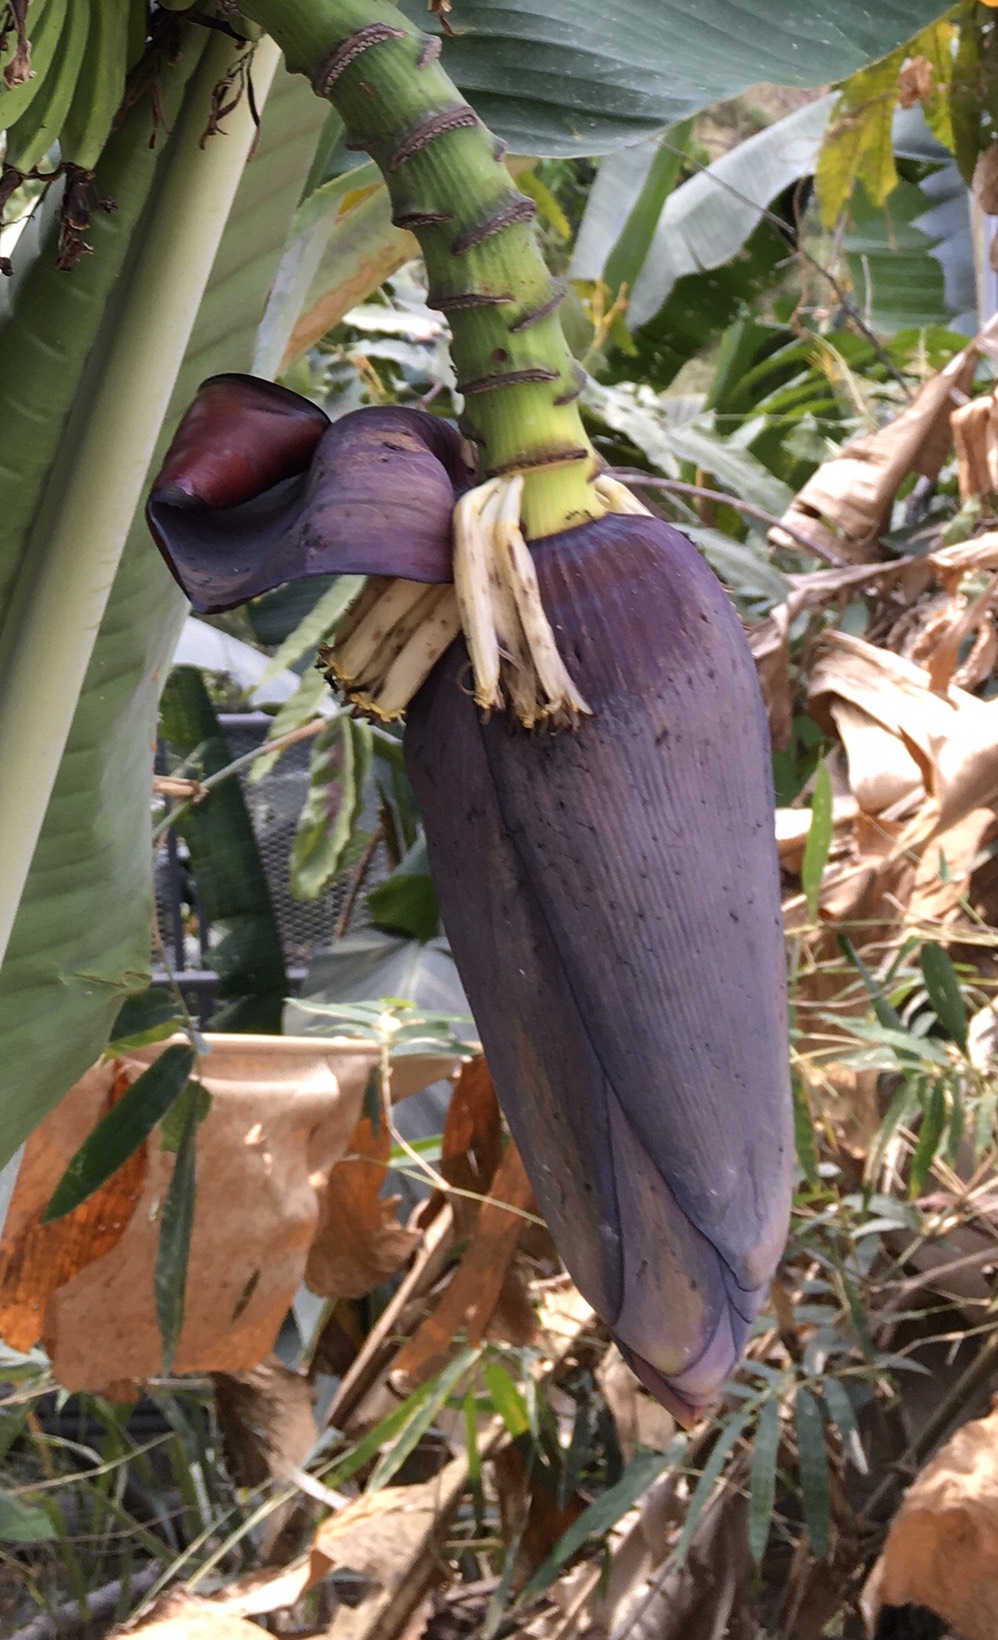 กล้วยป่าดอยมูเซอ Musa acuminata Colla ssp. malaccensis (Rindl.) Simmonds (กล้วยป่าดอยมูเซอ)<br/>MUSACEAE